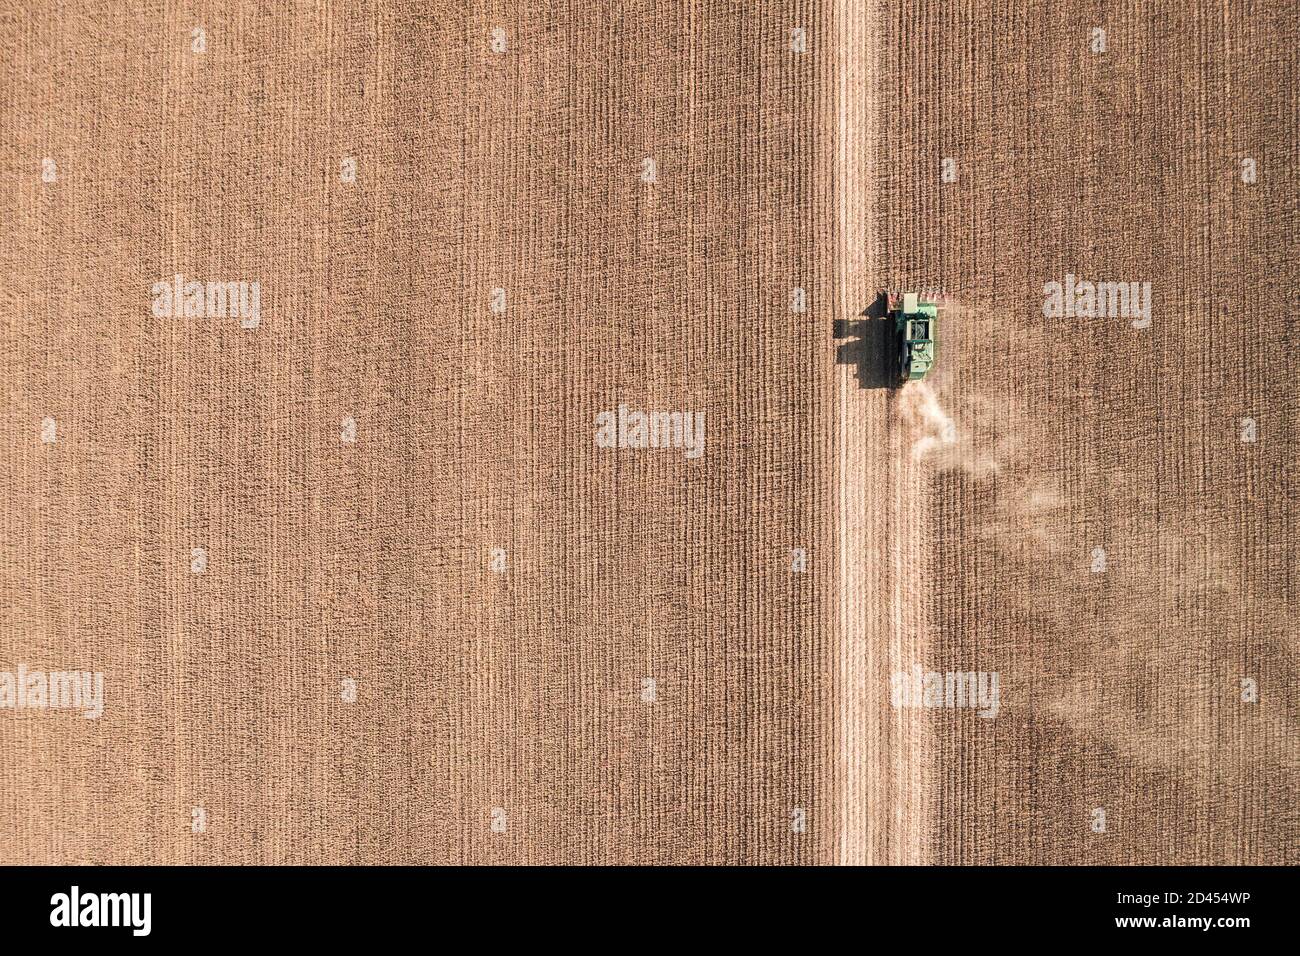 Vista aerea del drone con splendido paesaggio autunnale del trattore in funzione sul campo di raccolta. Concetto di agricoltura. Foto di alta qualità Foto Stock